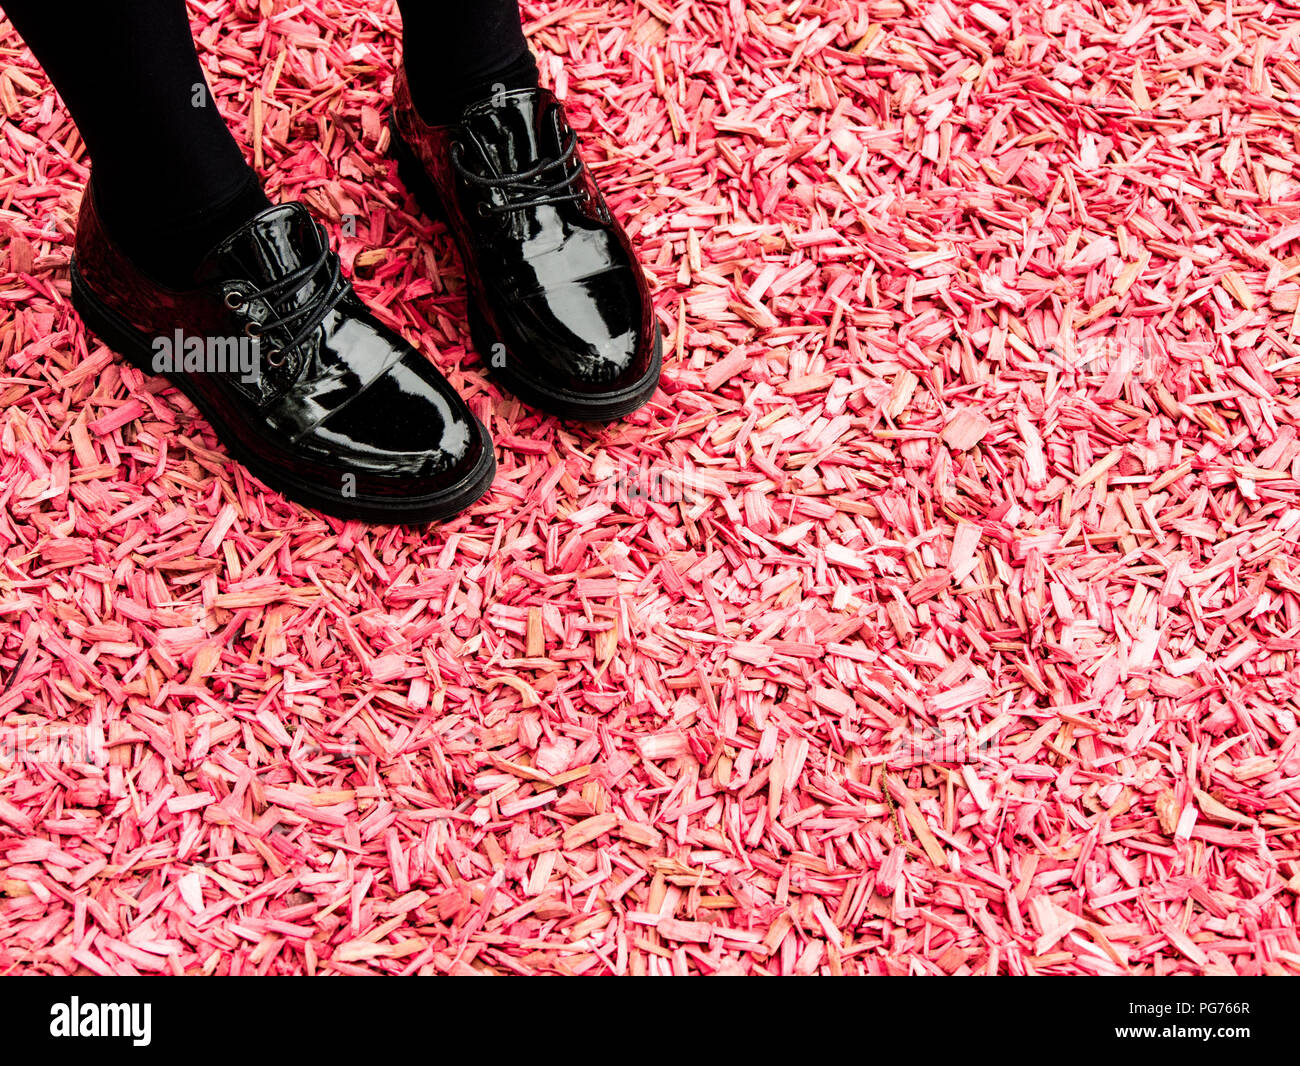 Chaussures noires brillantes de la jeune fille rose sur la masse de copeaux Banque D'Images